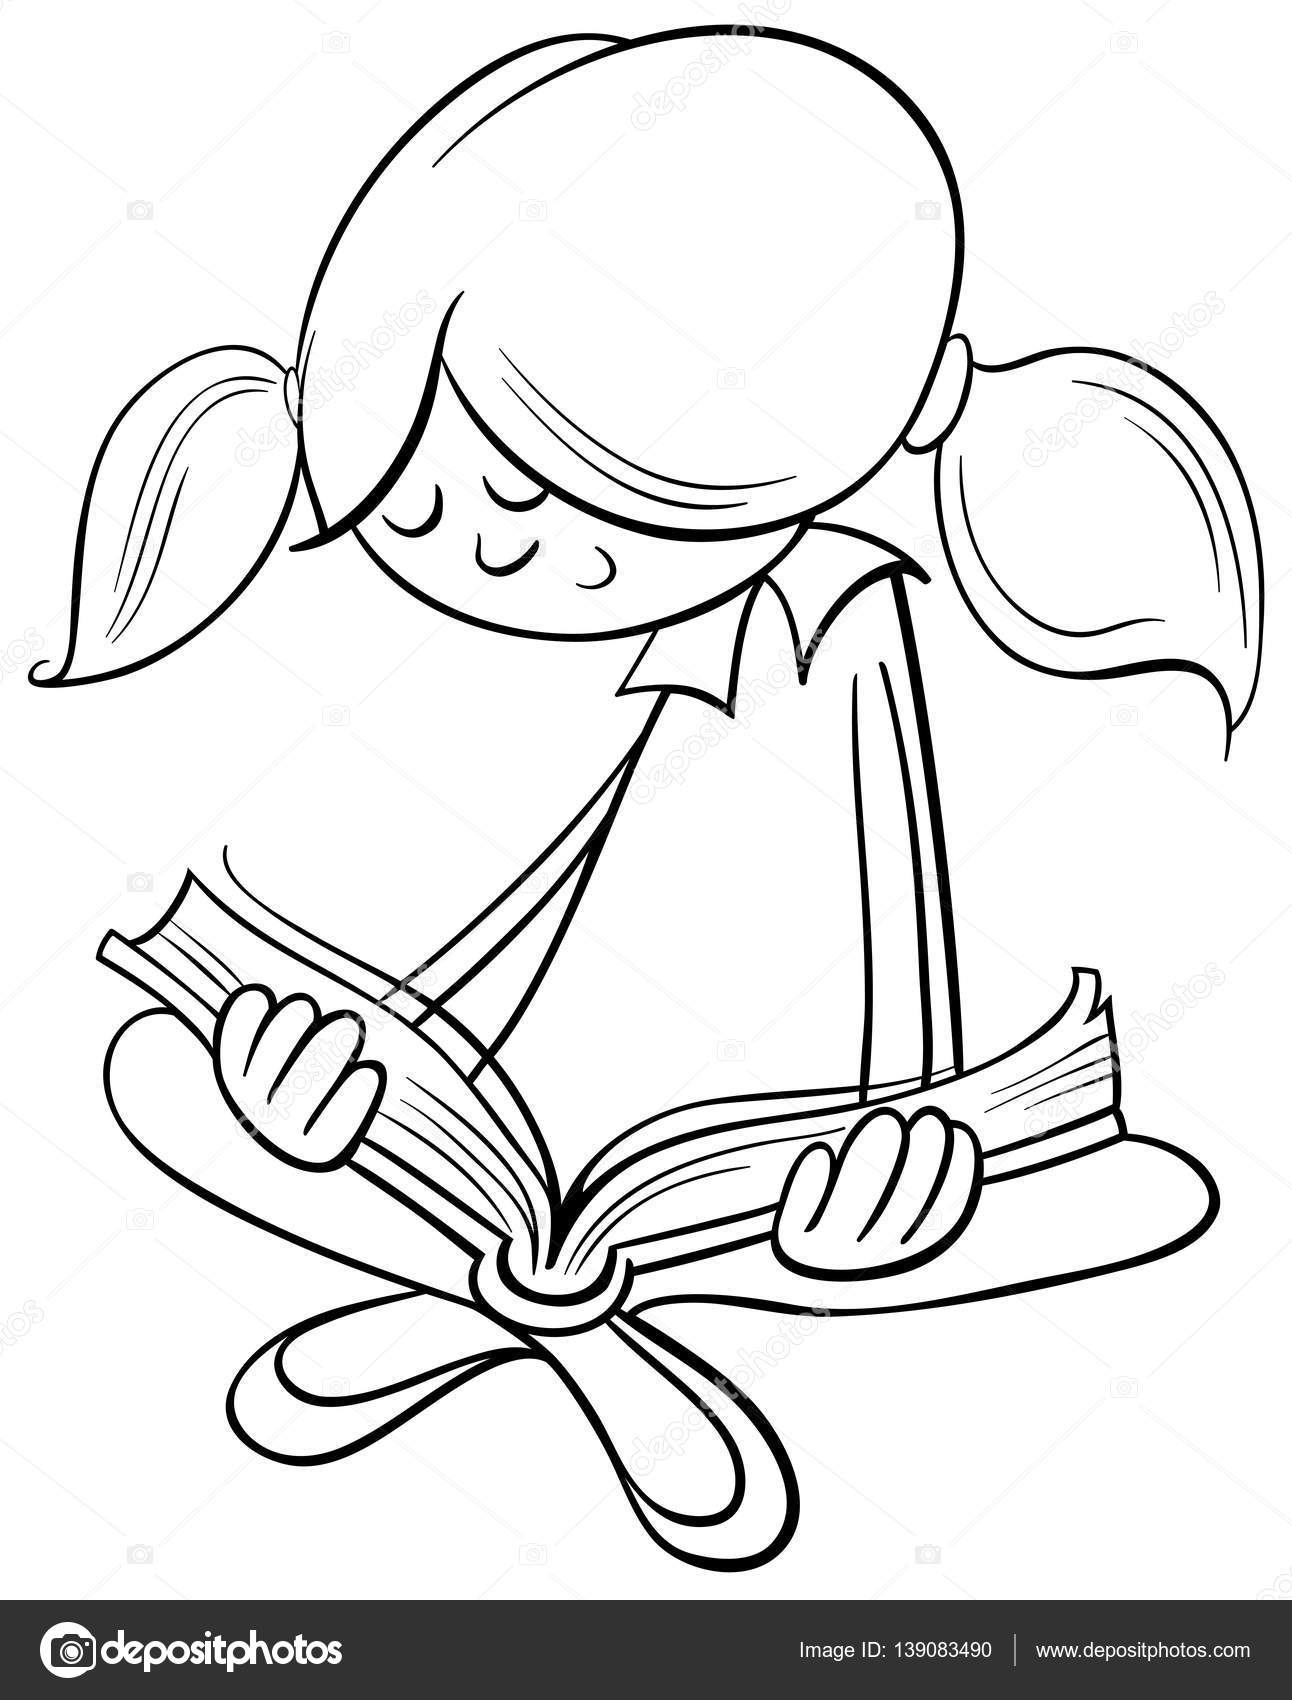 Bianco e nero del fumetto del carattere di bambina sveglia leggendo una libro da colorare — Vettoriali di izakowski Trova immagini simili